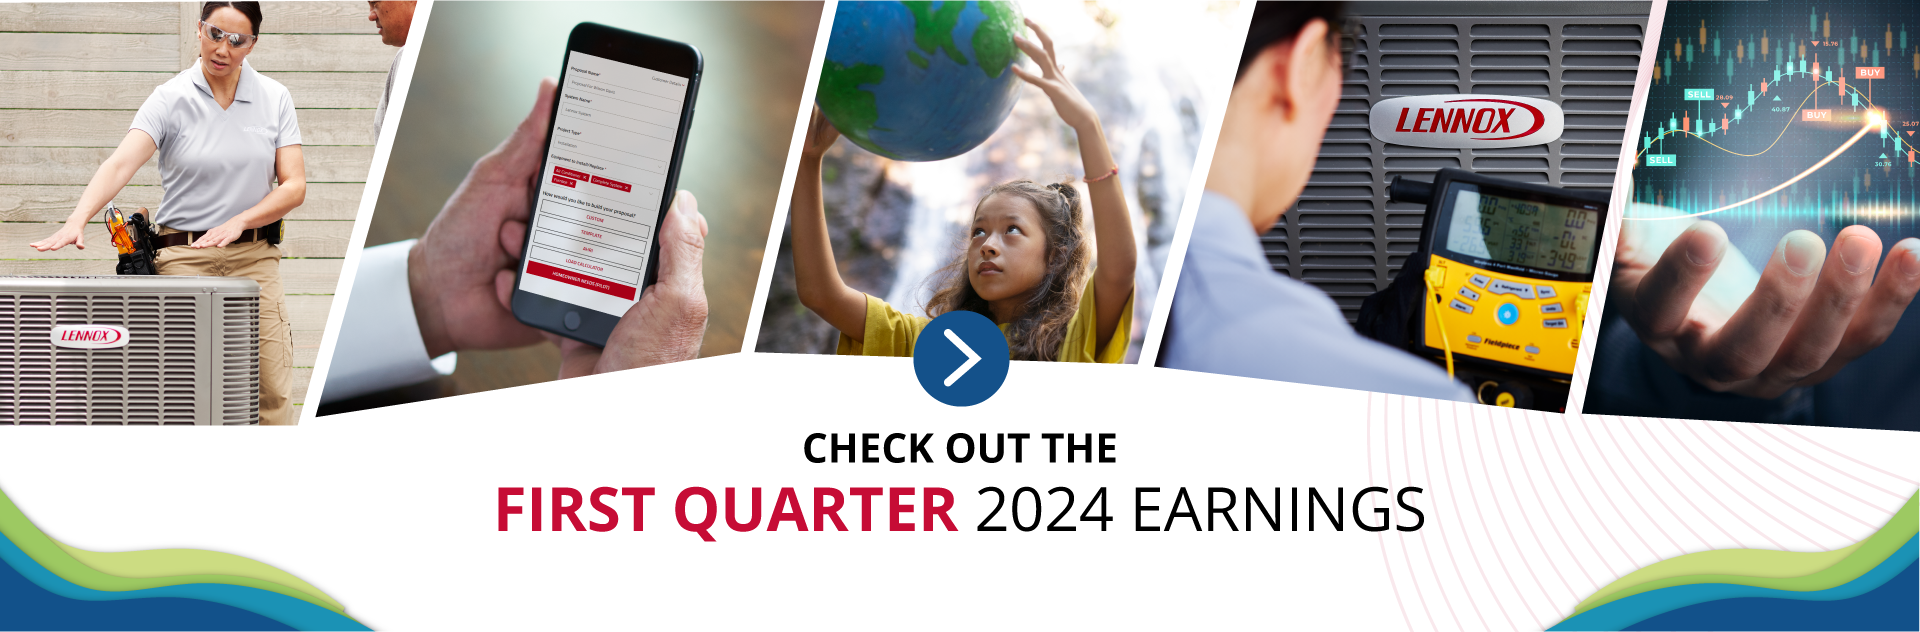 Third Quarter 2023 earnings